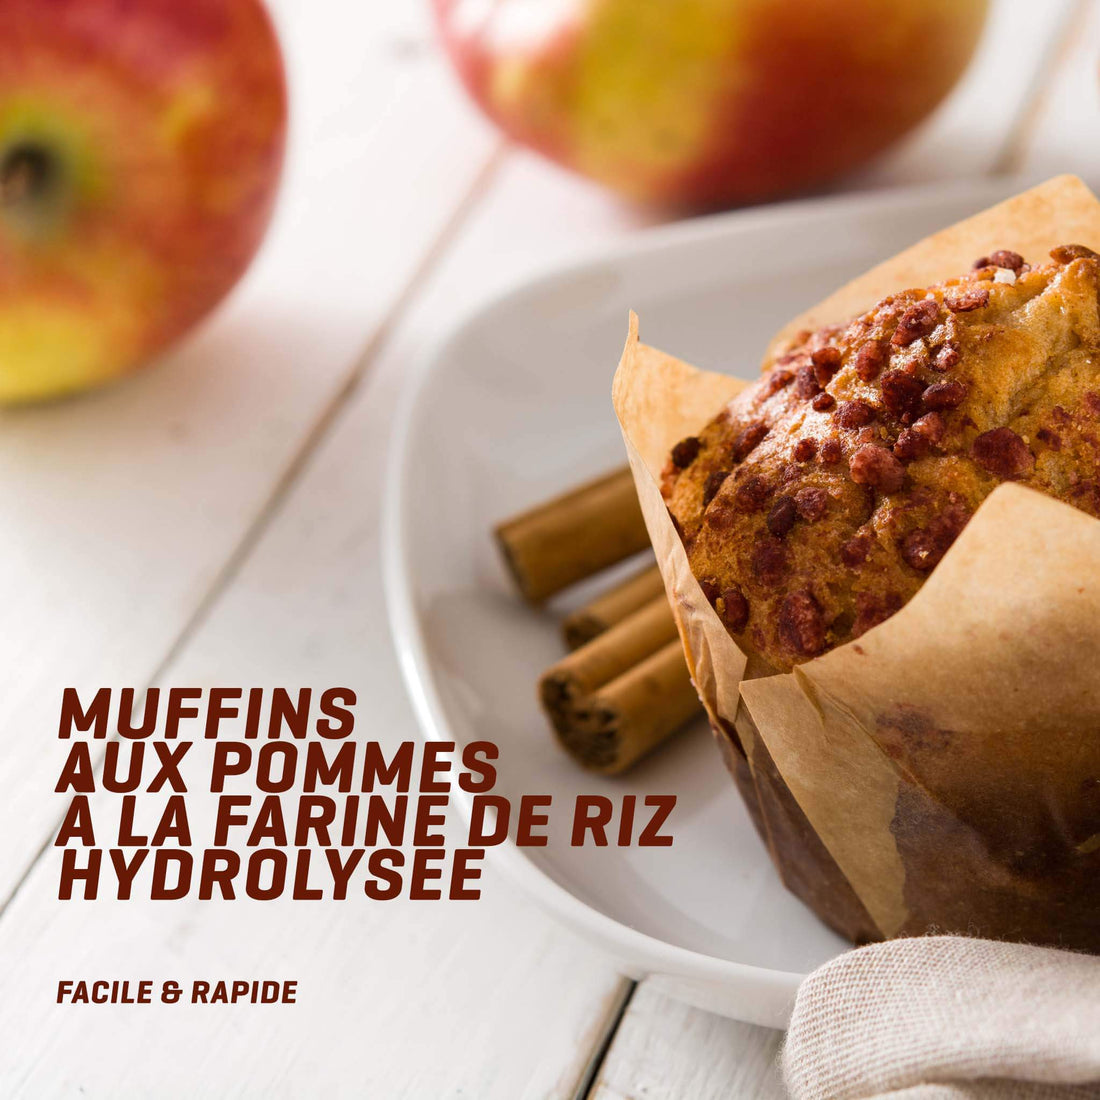 Muffins aux pommes sans lactose , sans gluten